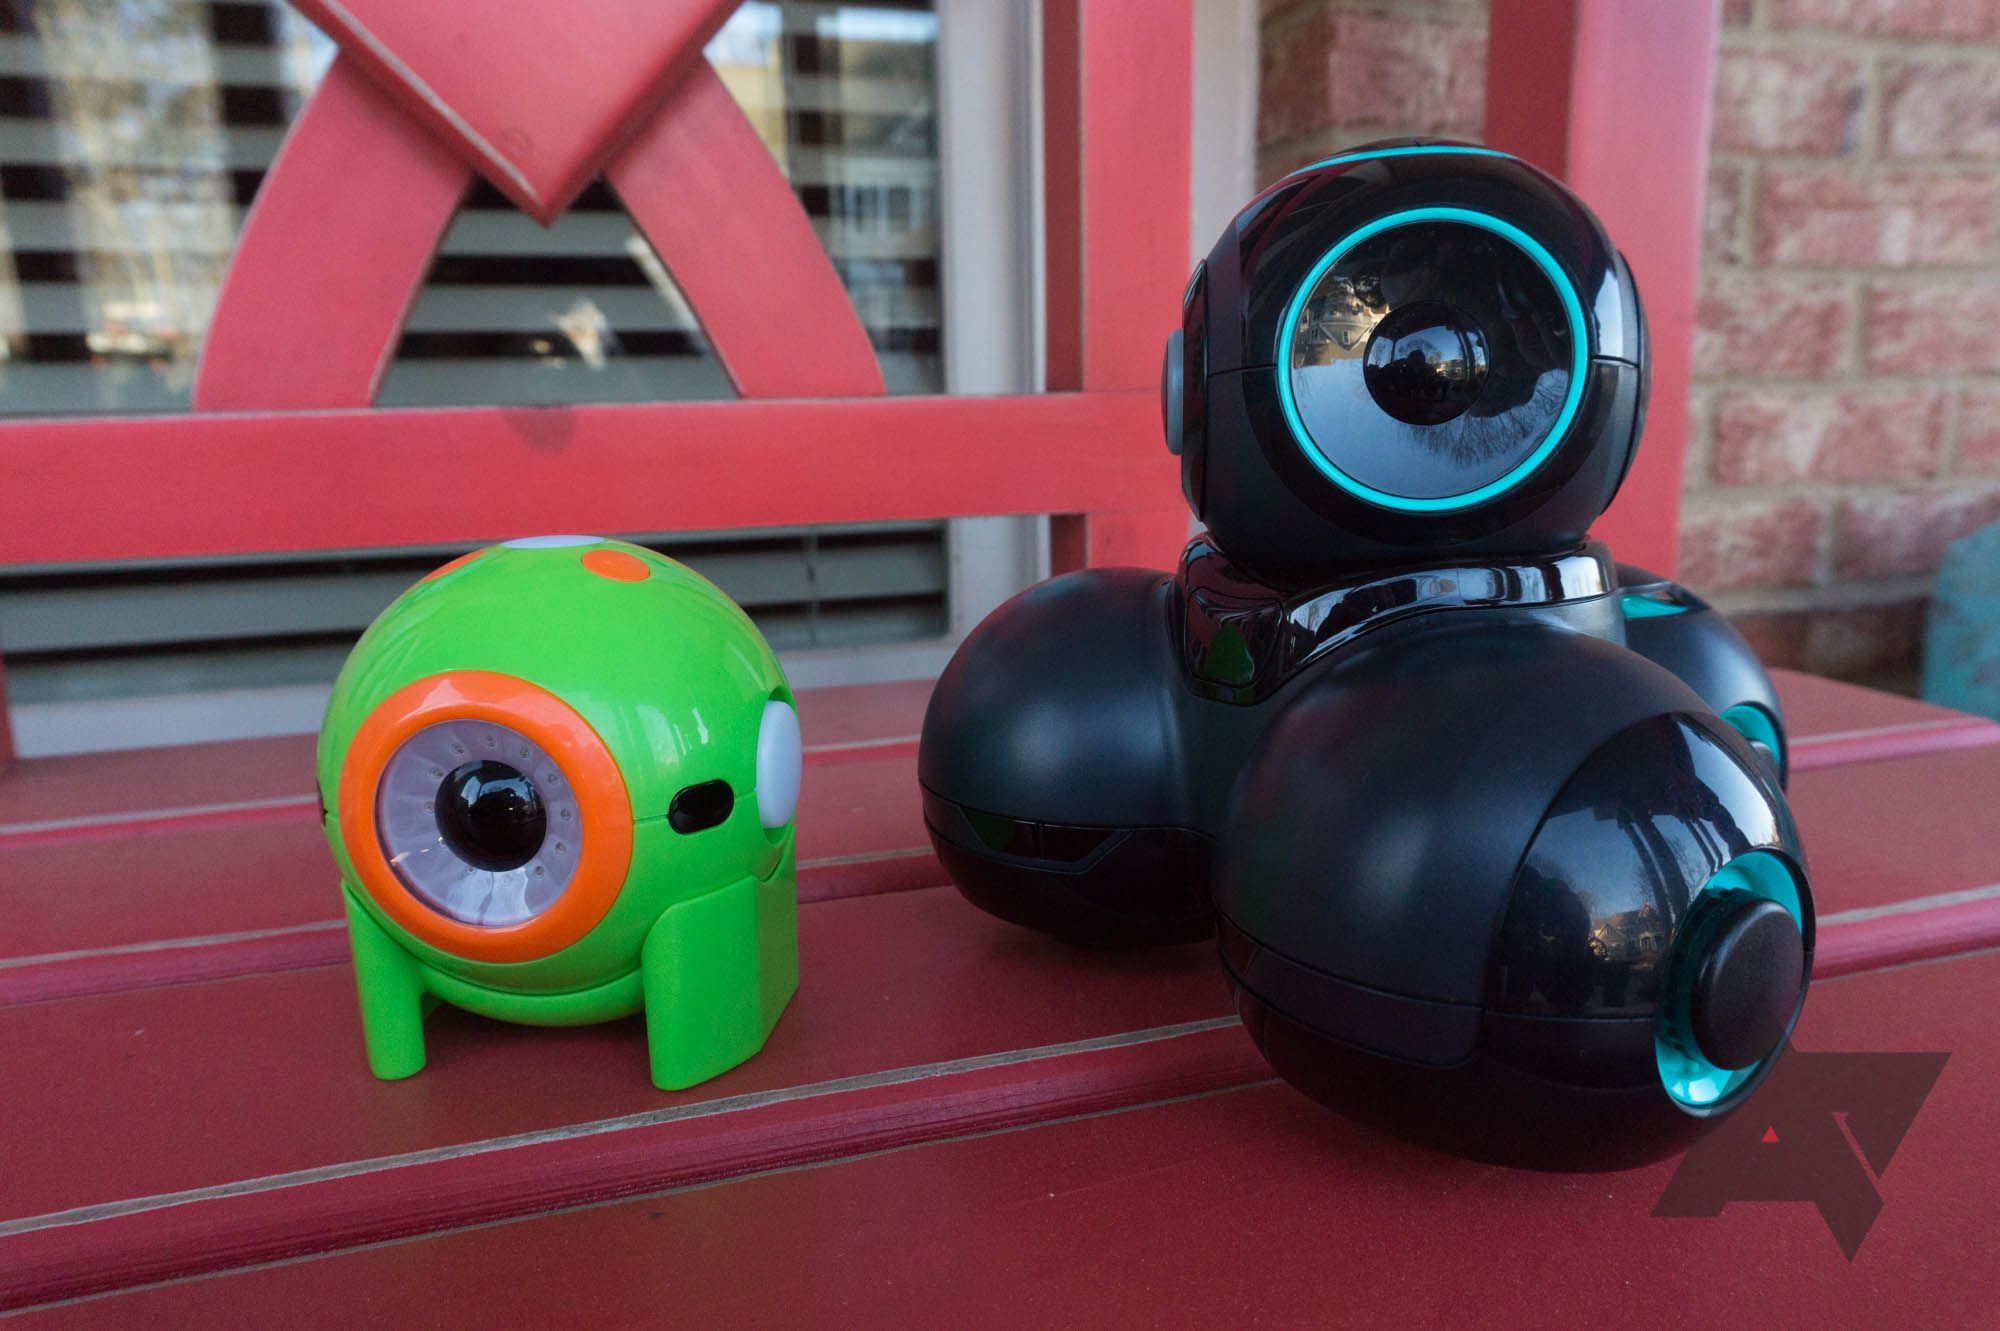 Wonder Workshop  Dash, Dot & Cue Coding Robot Toys For Kids